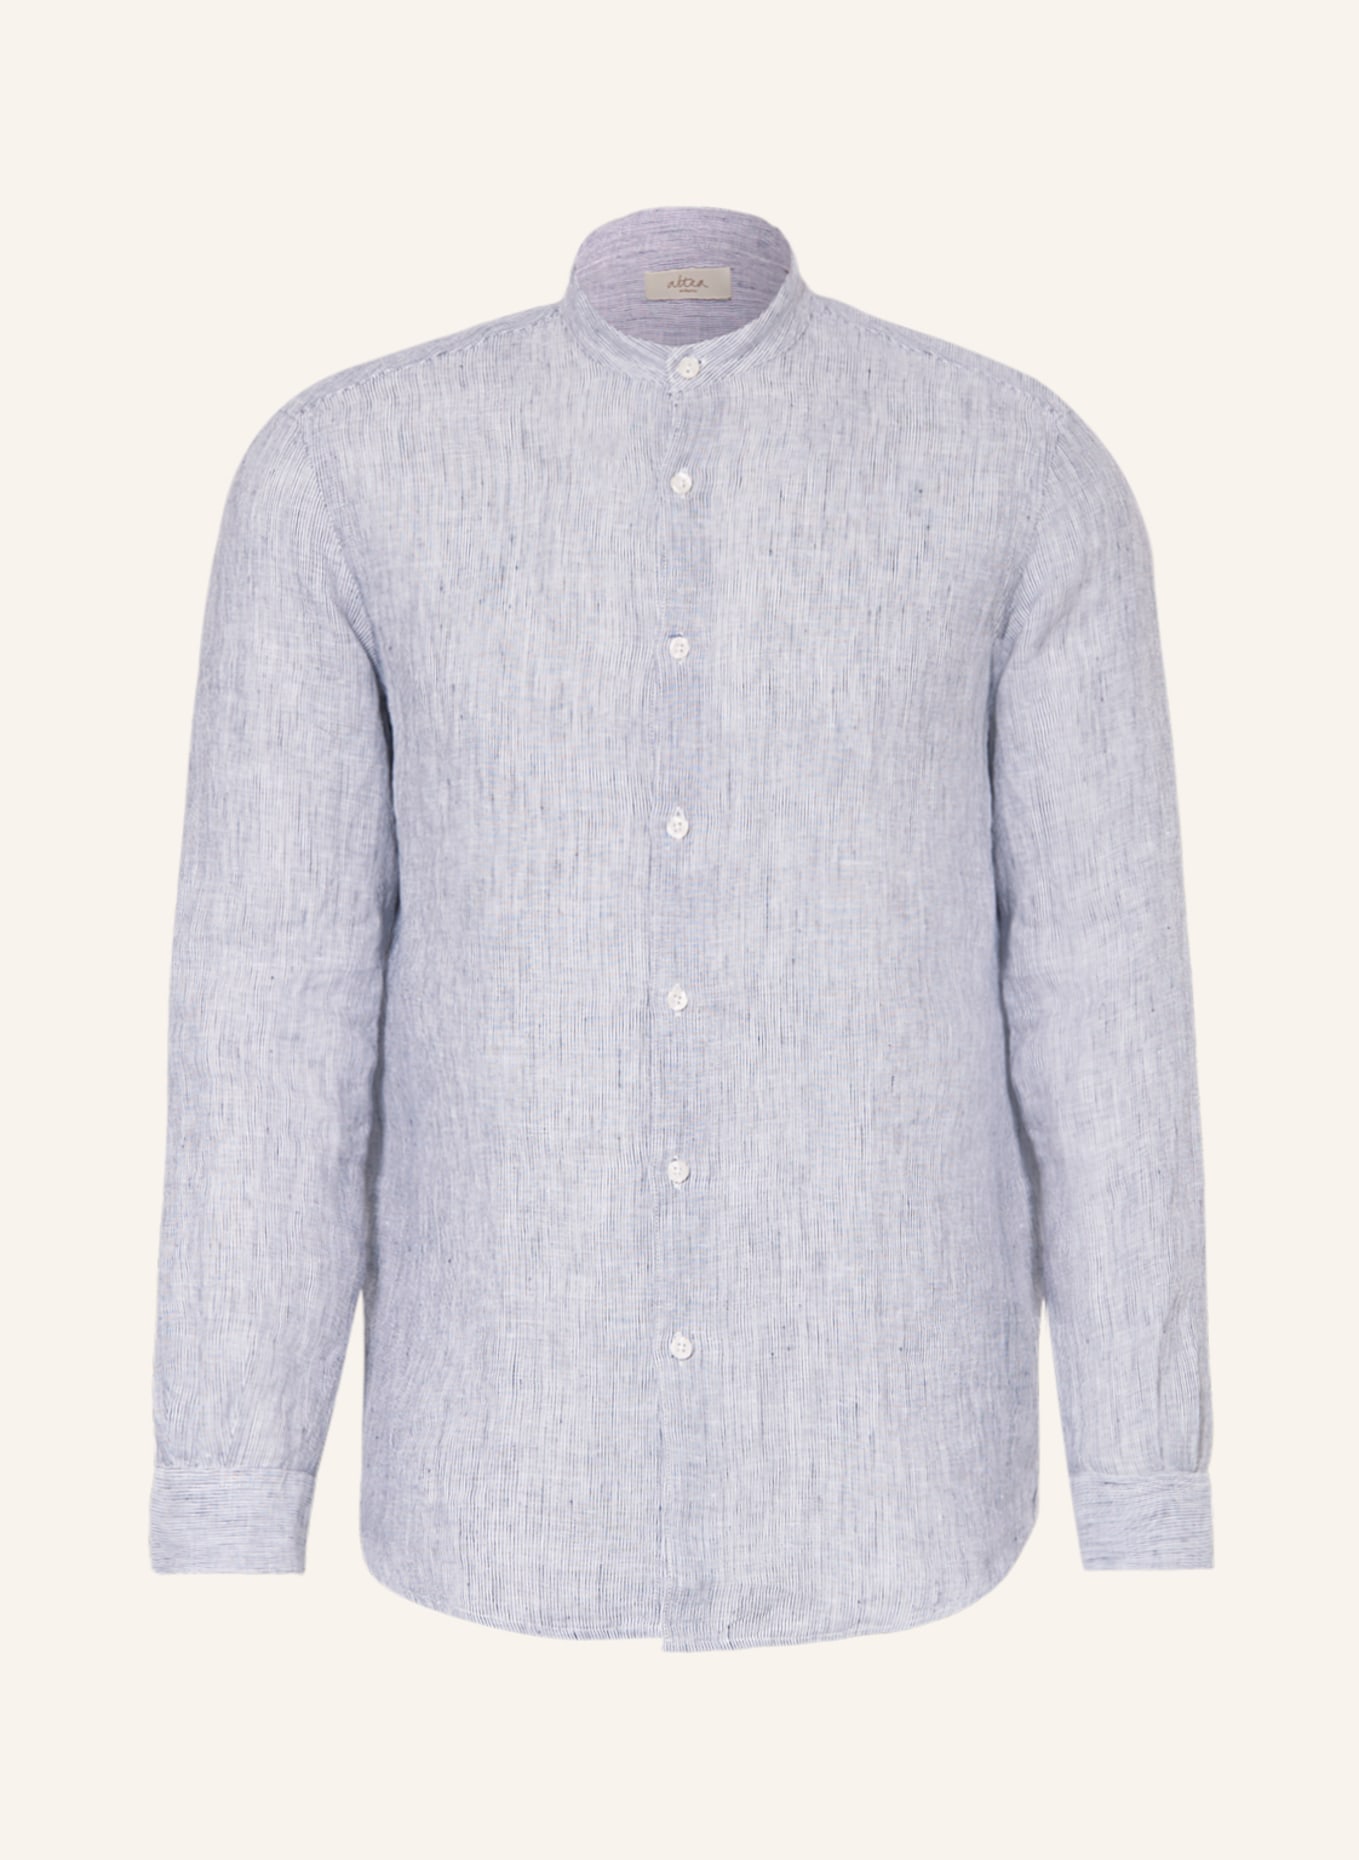 altea Leinenhemd Regular Fit mit Stehkragen, Farbe: DUNKELBLAU/ WEISS (Bild 1)